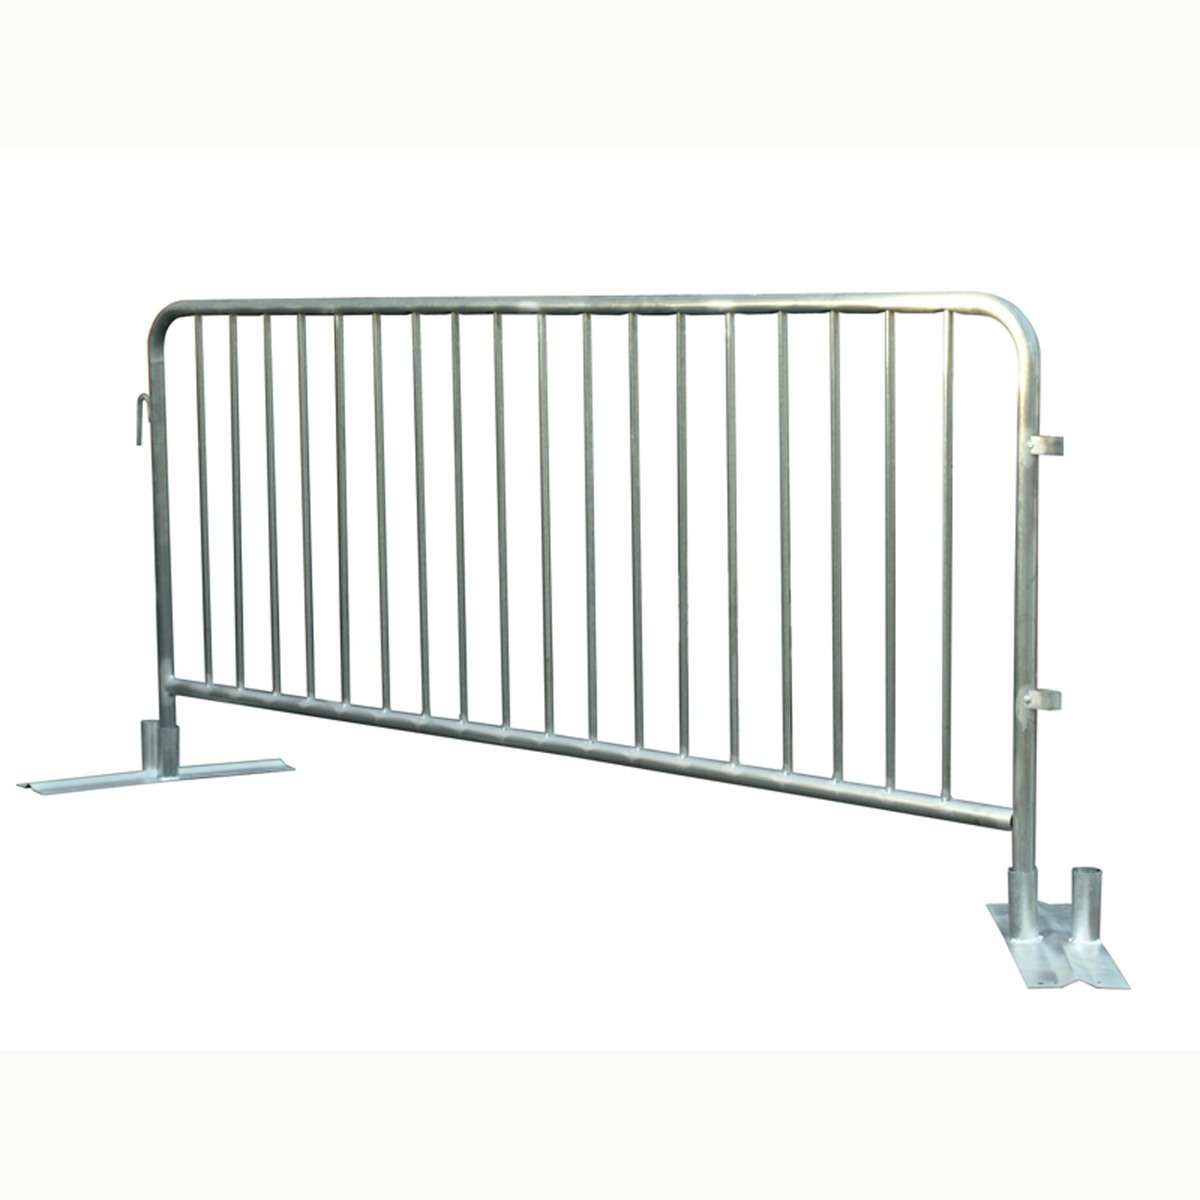 Visokokvalitetna barijera za kontrolu gužve i čelični materijal BS standardna vruće pocinčana policijska ograda za kontrolu gomile